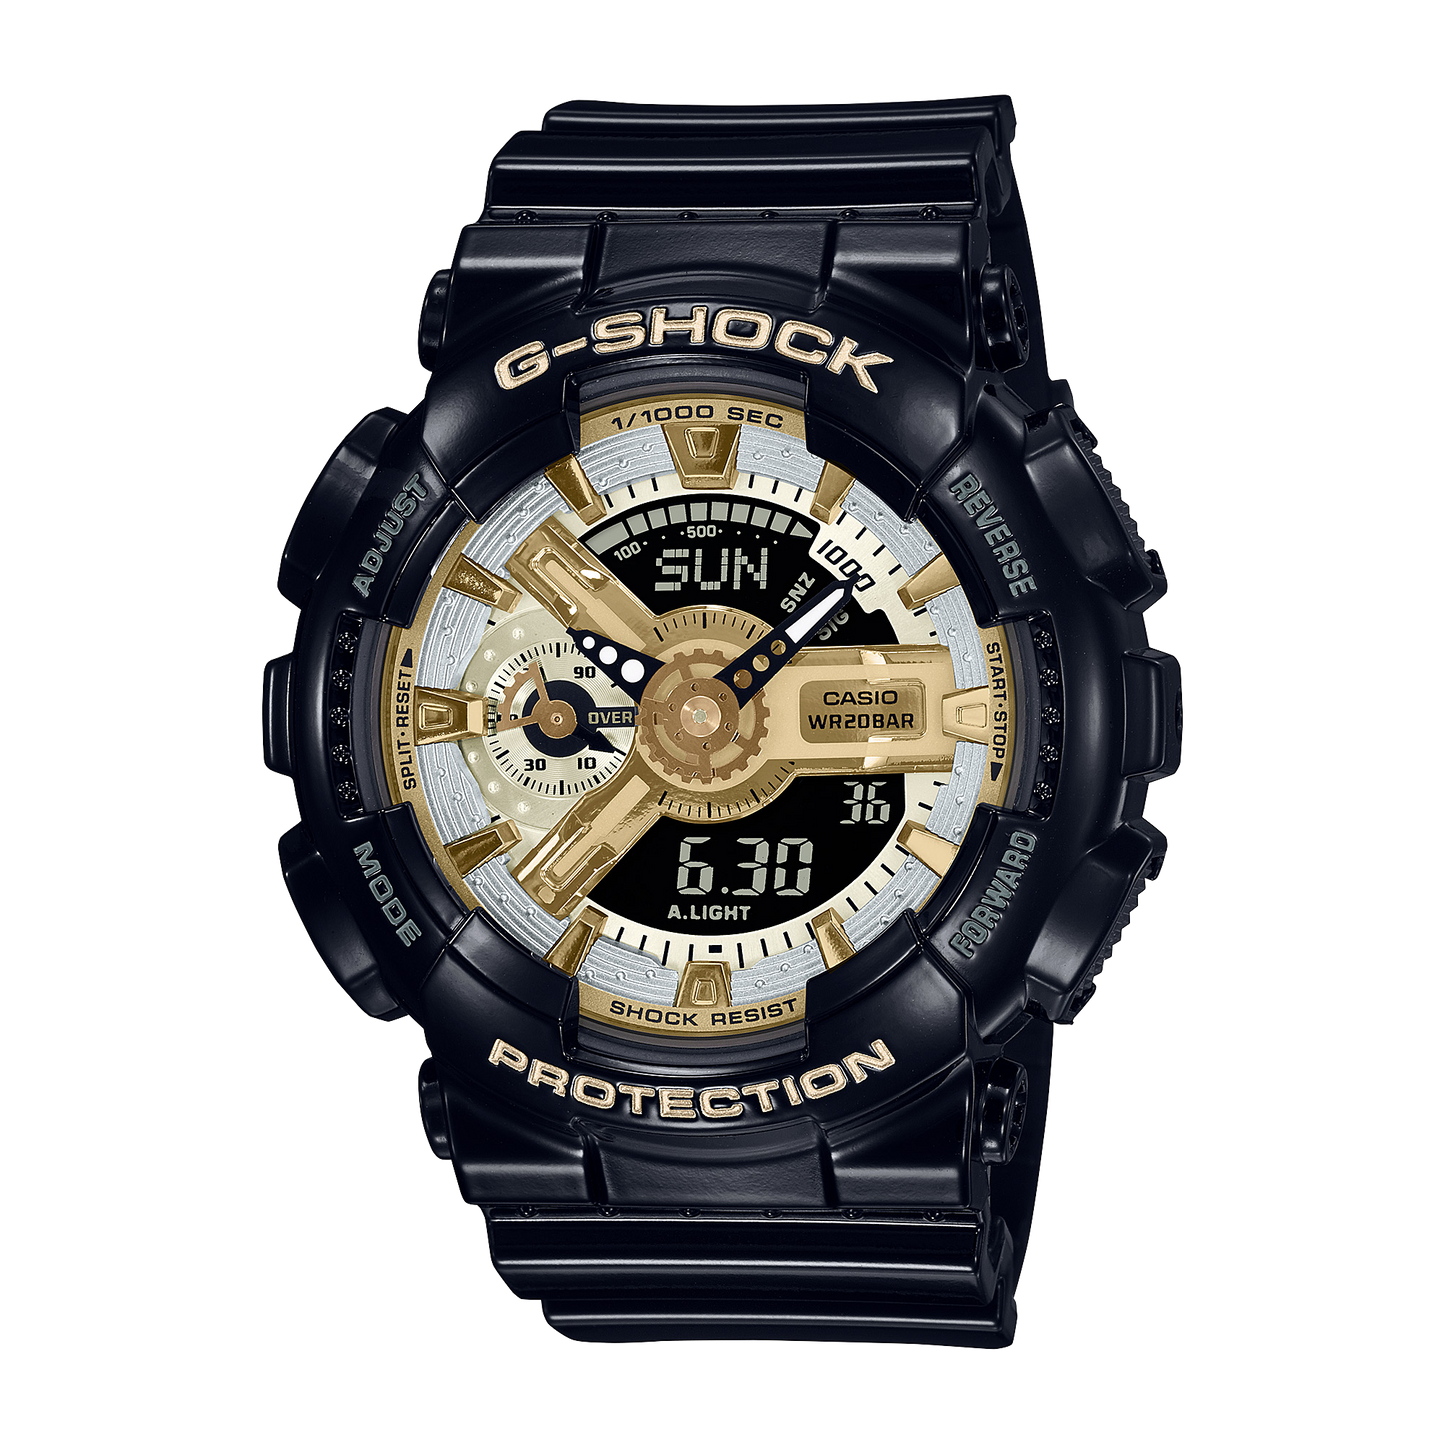 Casio G-Shock GMA-S110GB-1ADR Analog Digital Women's Watch